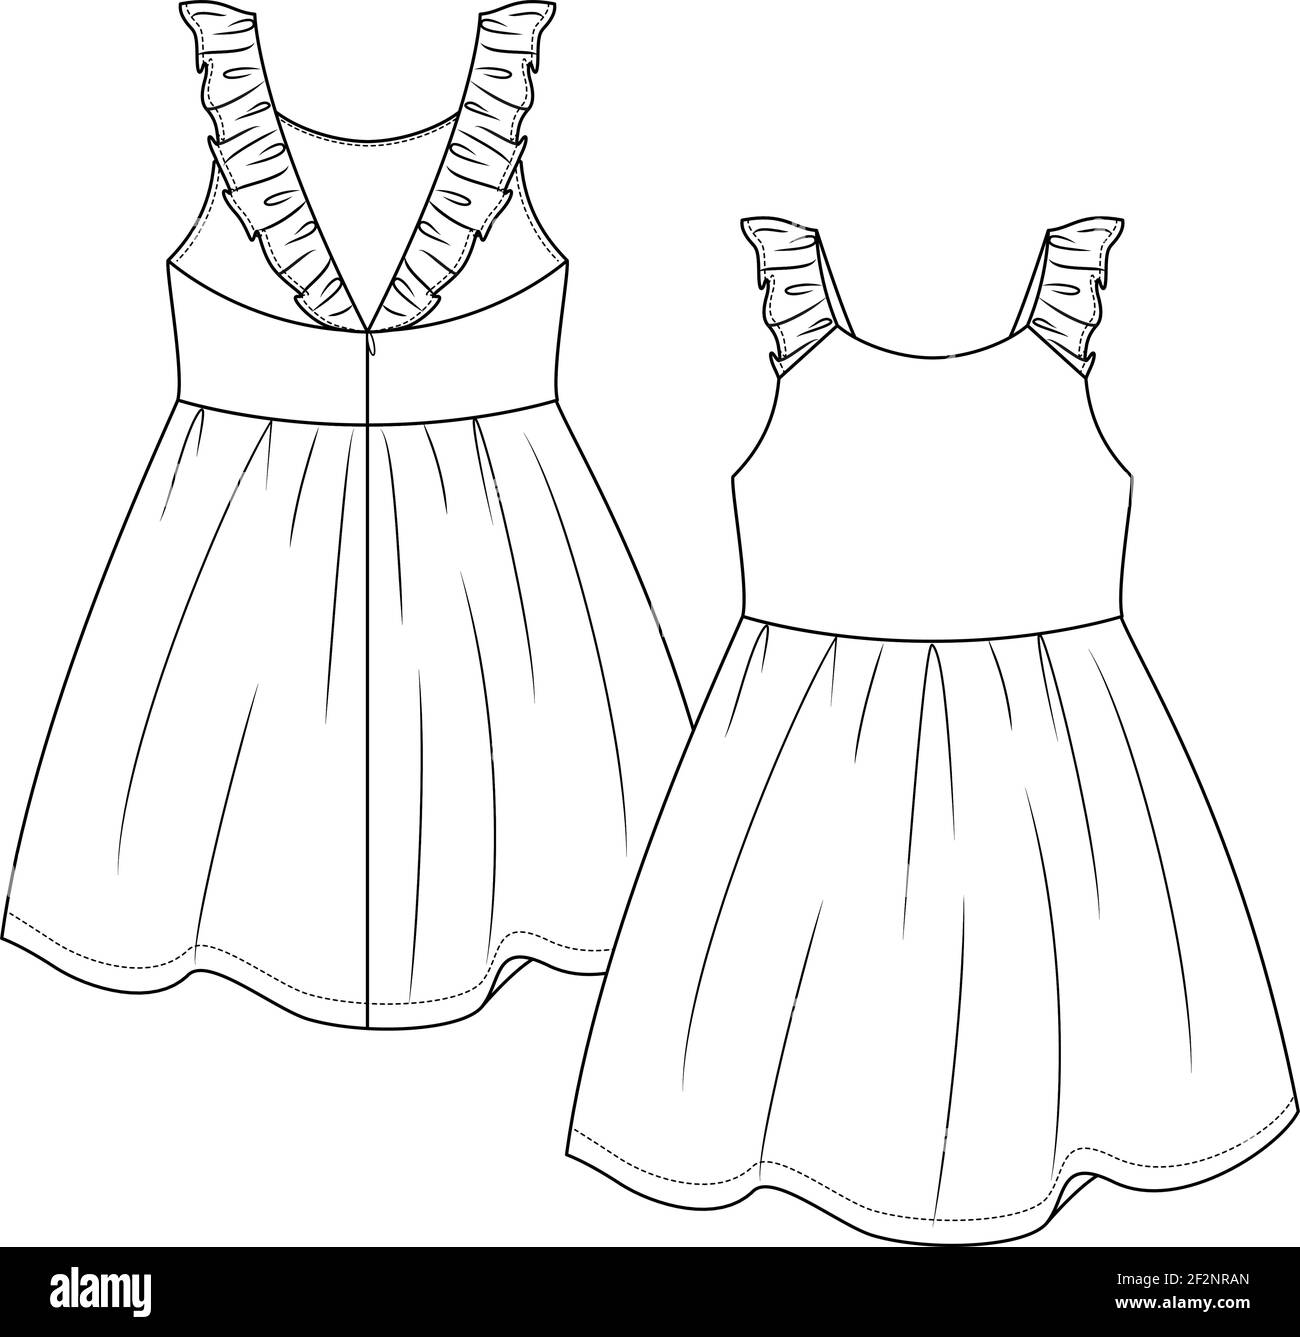 Baby Girls Summer dress flat sketch template. Infant Girls ...